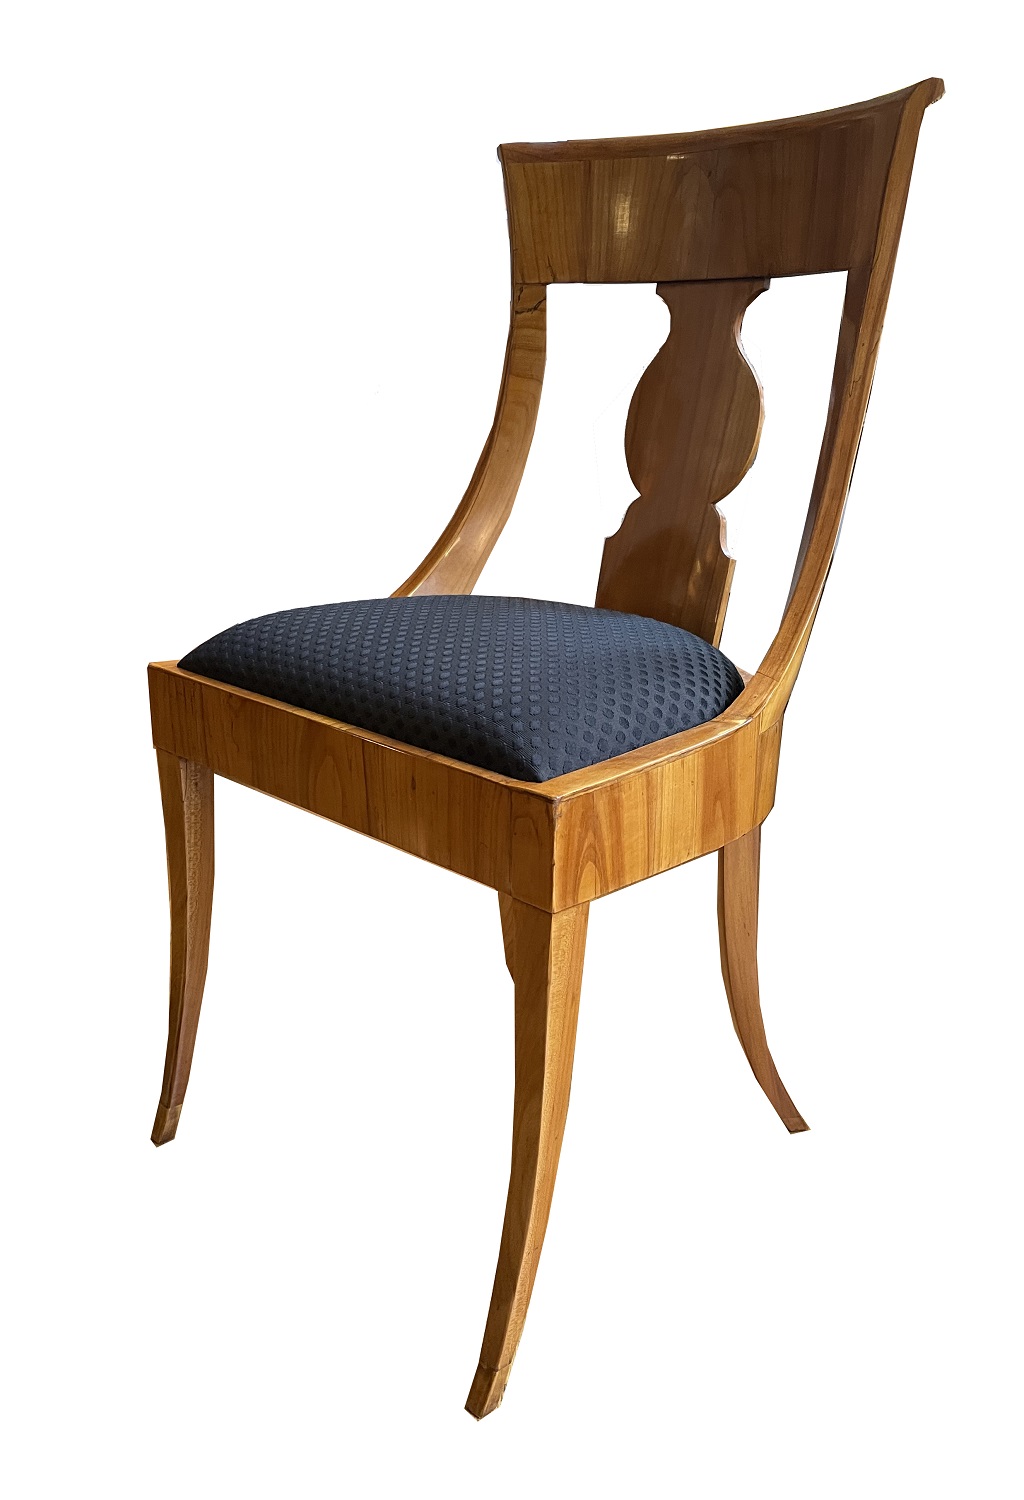 Biedermeier cherrywood chairs